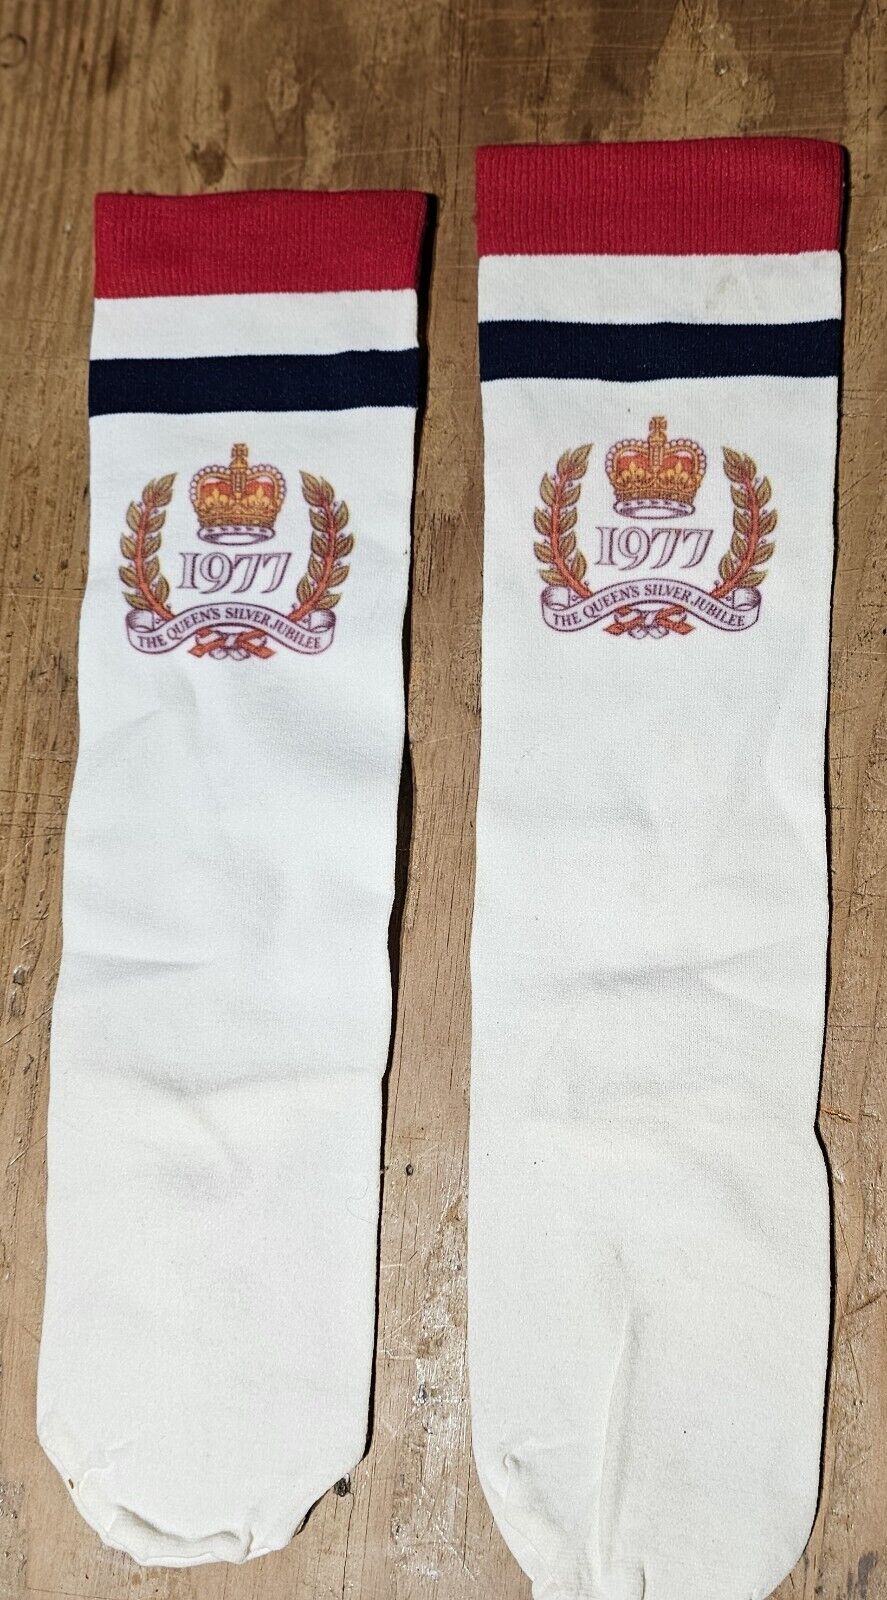 The Queen\'s Silver Jubilee 1977 Socks